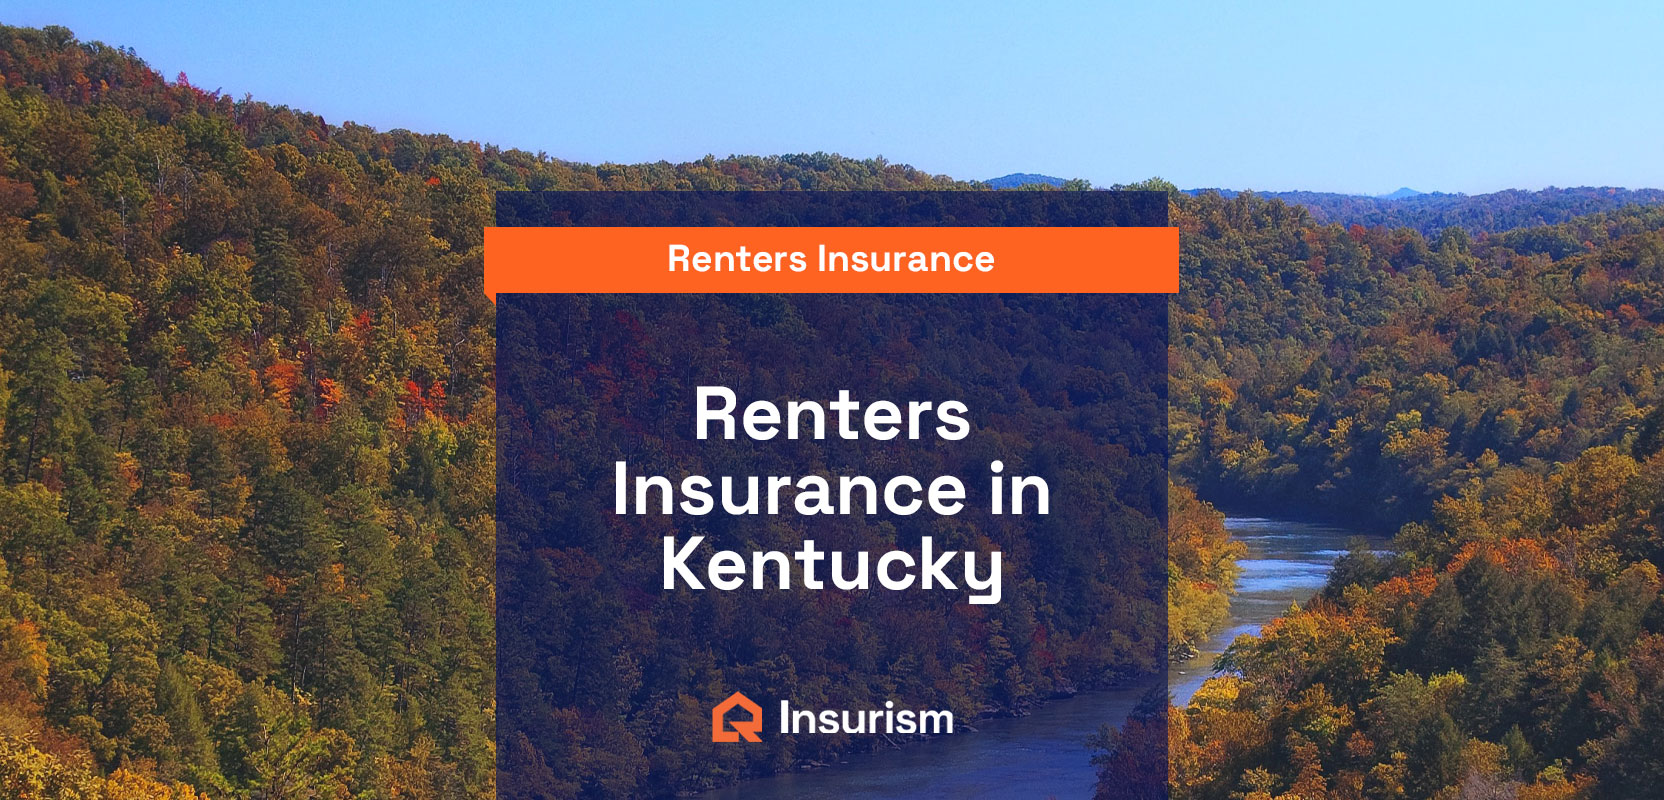 Renters insurance in Kentucky